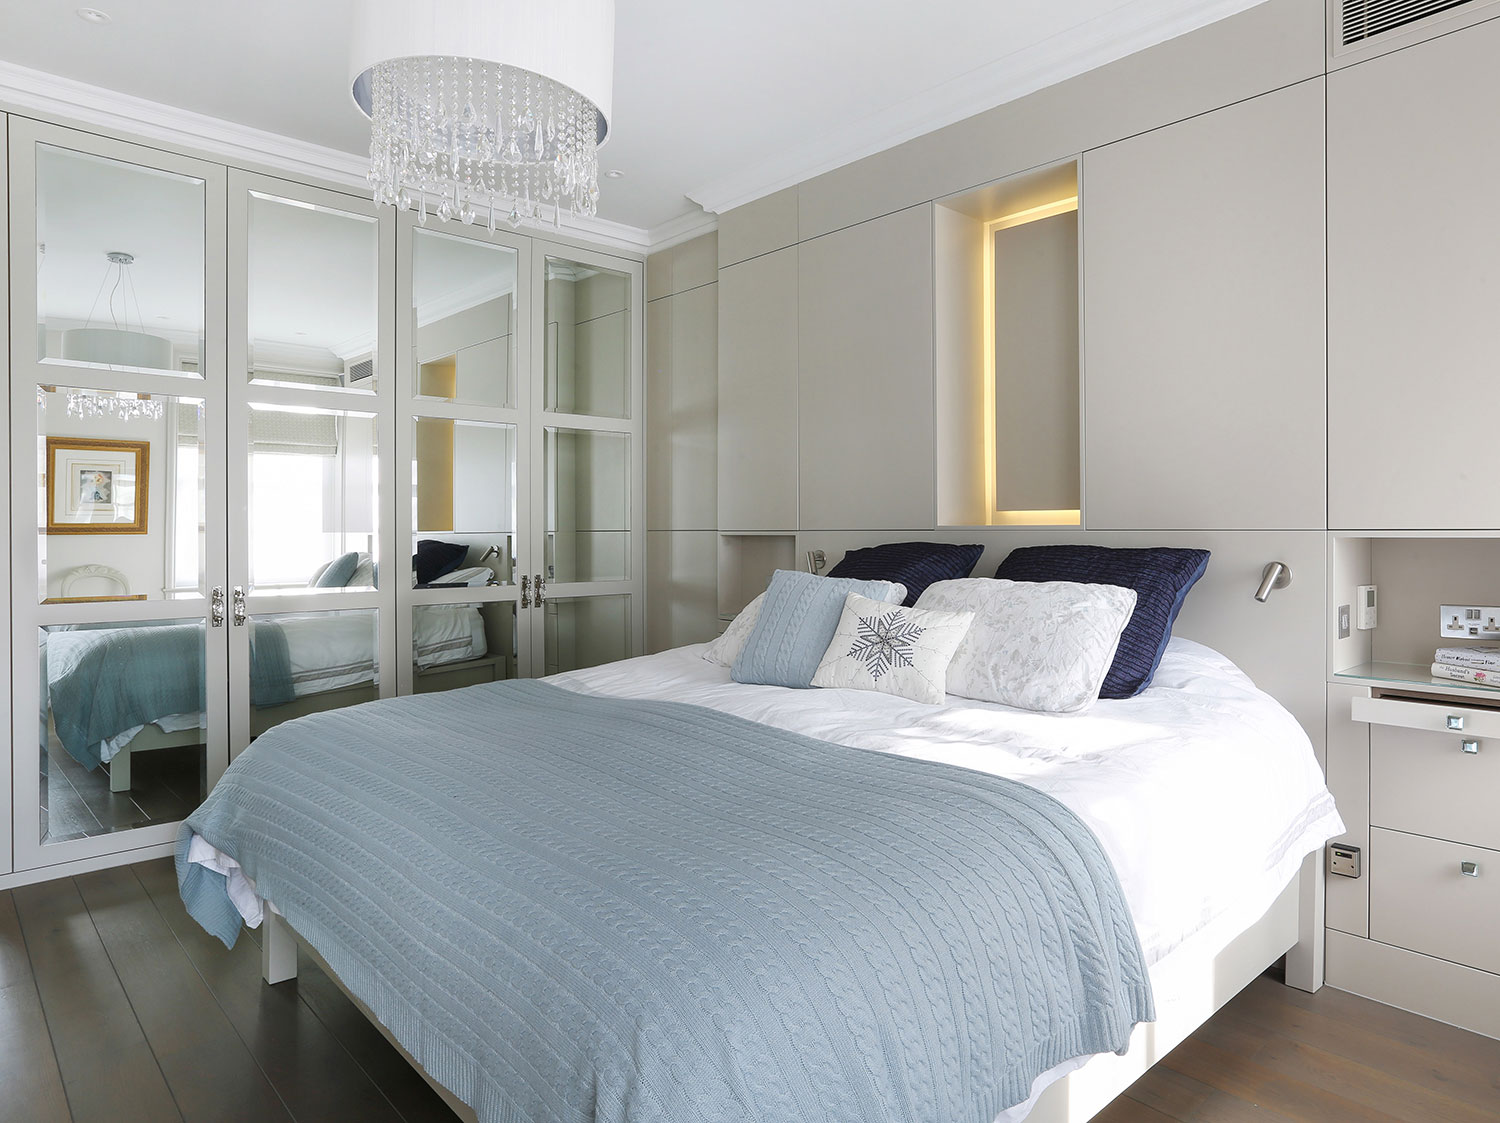 High end master bedroom interior design